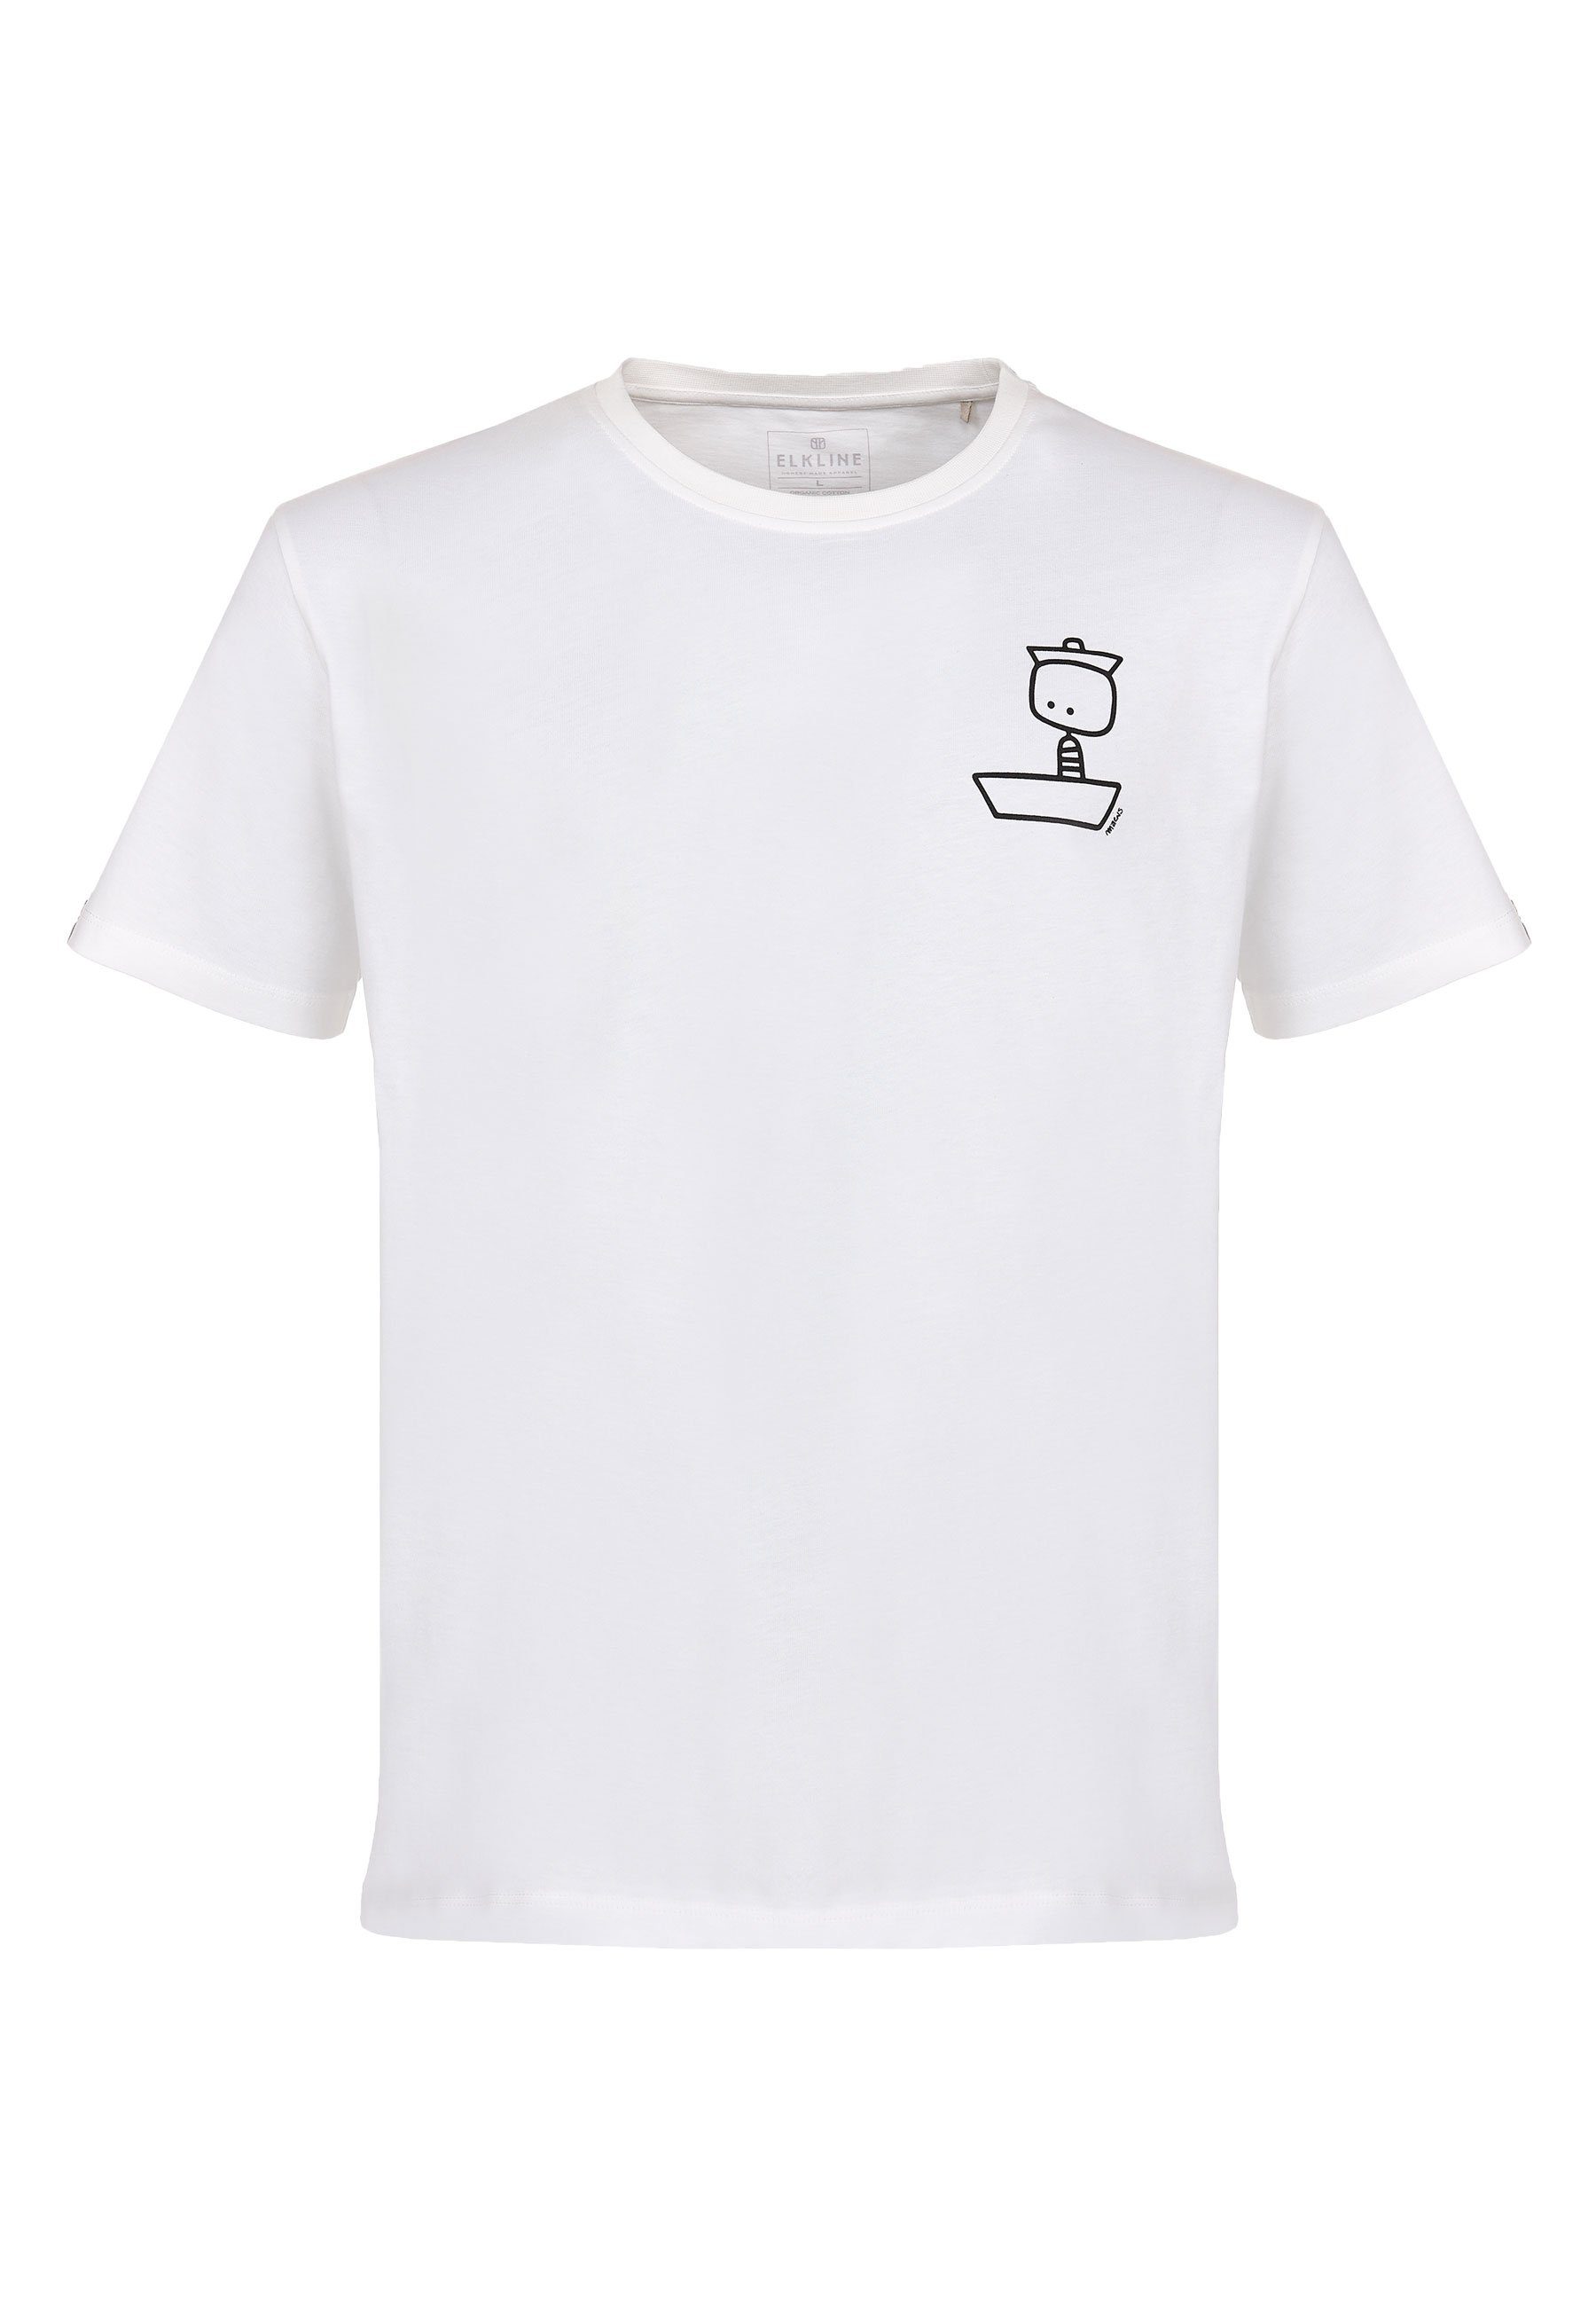 Elkline T-Shirt Maen auf See Comic Brust Print white